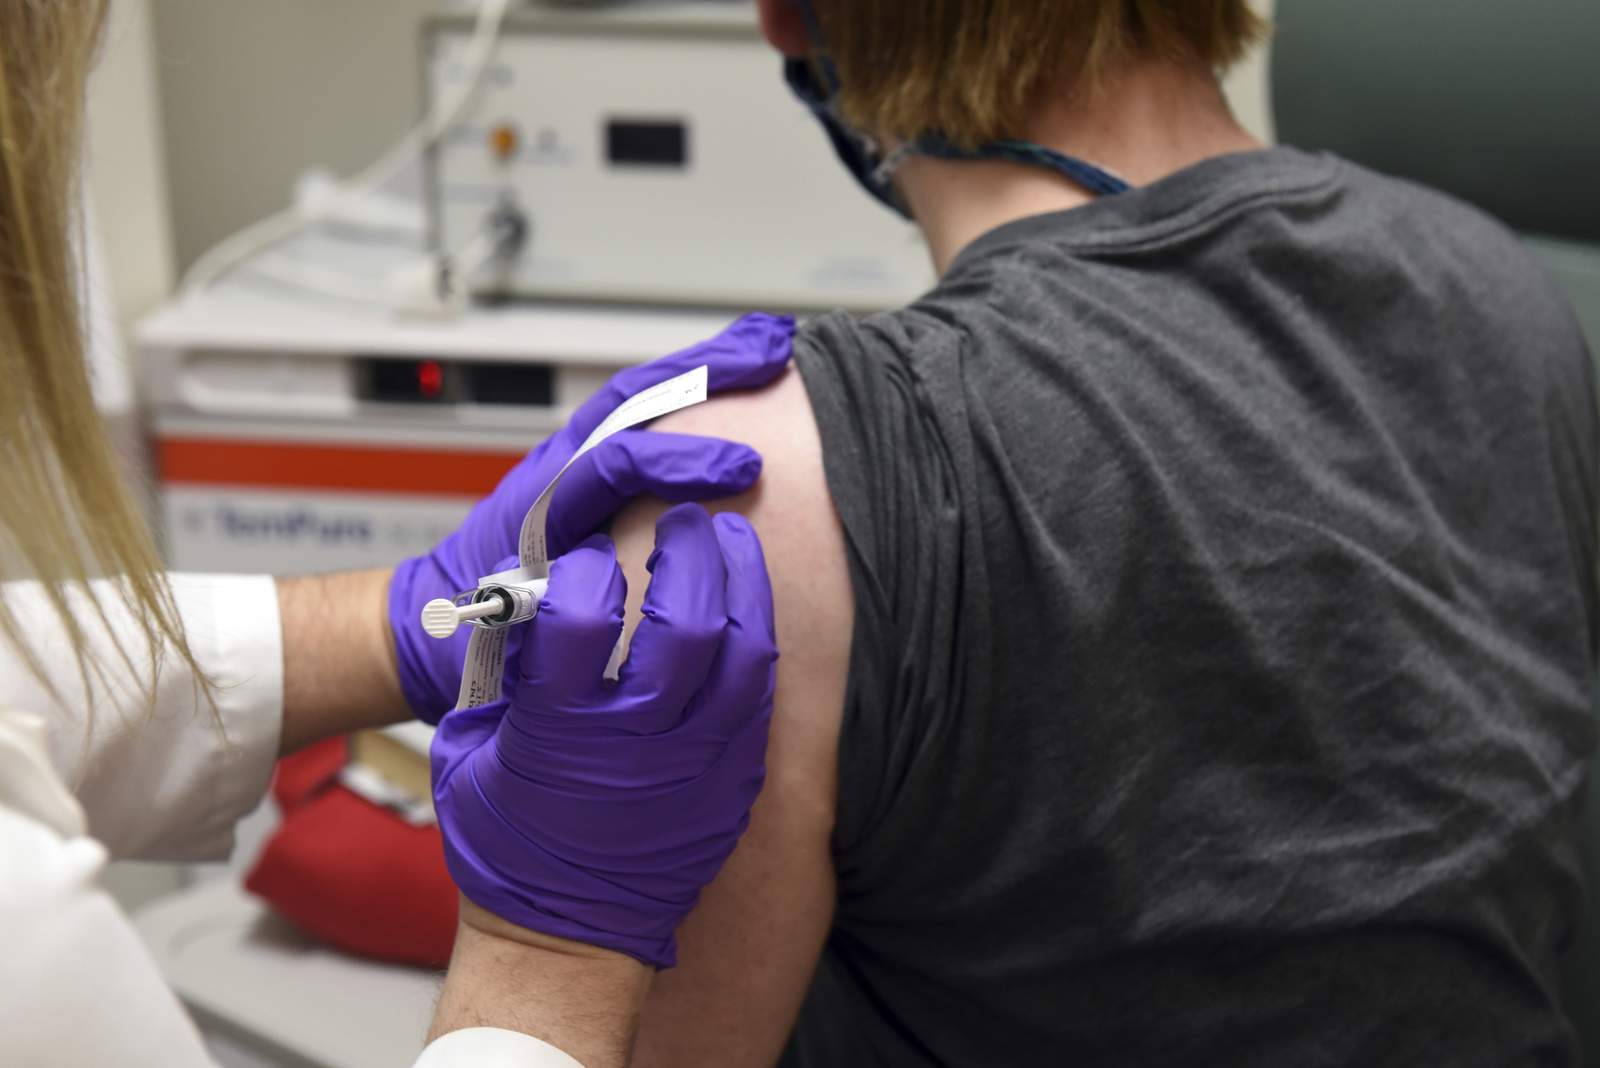 Ron DeSantis: La decisión de Florida de no exigir usar la vacuna de COVID-19 ayudará a su credibilidad